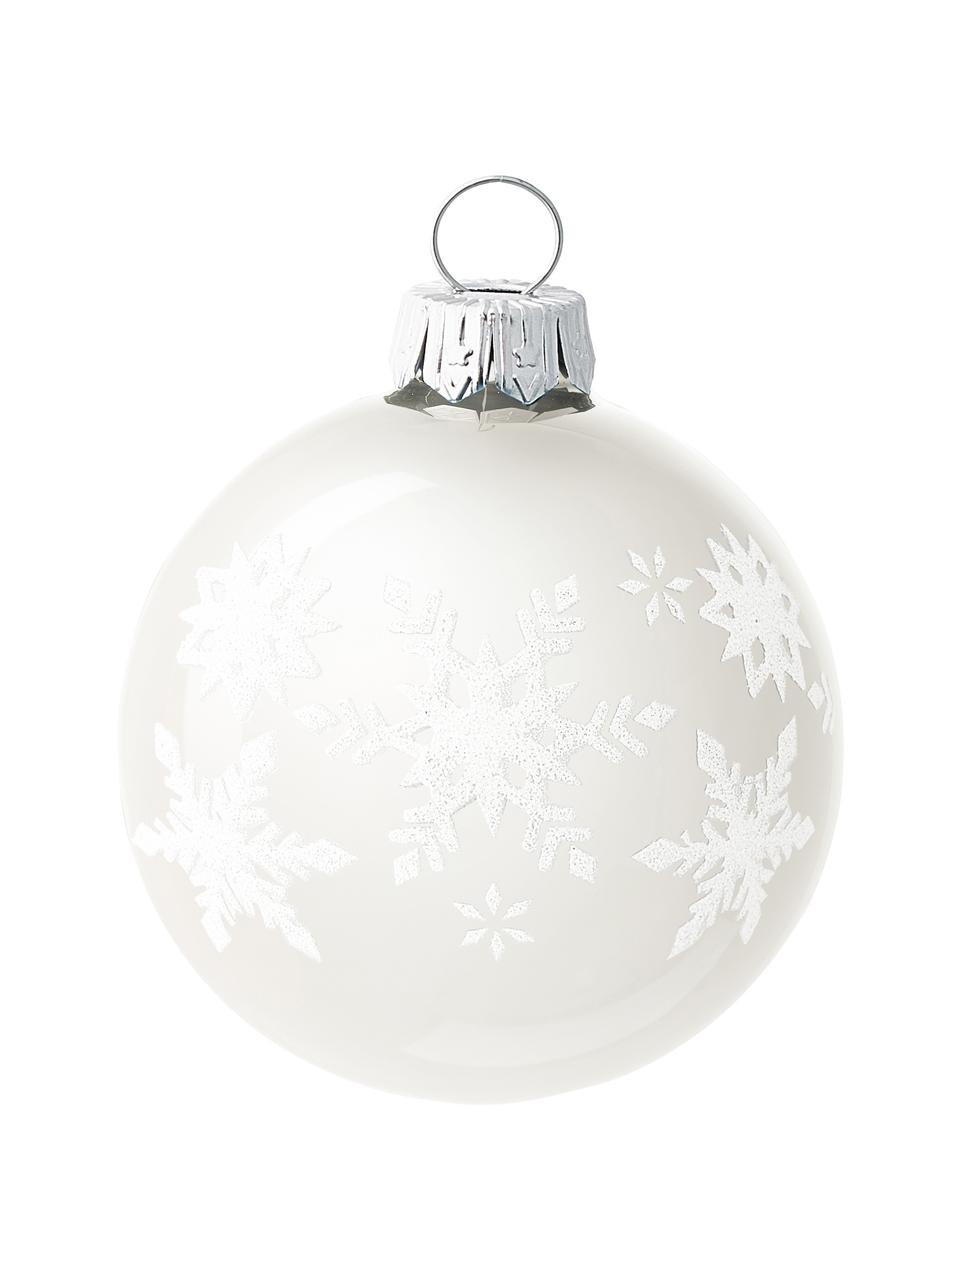 Mondgeblazen kerstballenset Snowflake Ø 8 cm, 6-delig, Glas, Blauwtinten, wit, zilverkleurig, Ø 8 x H 8 cm